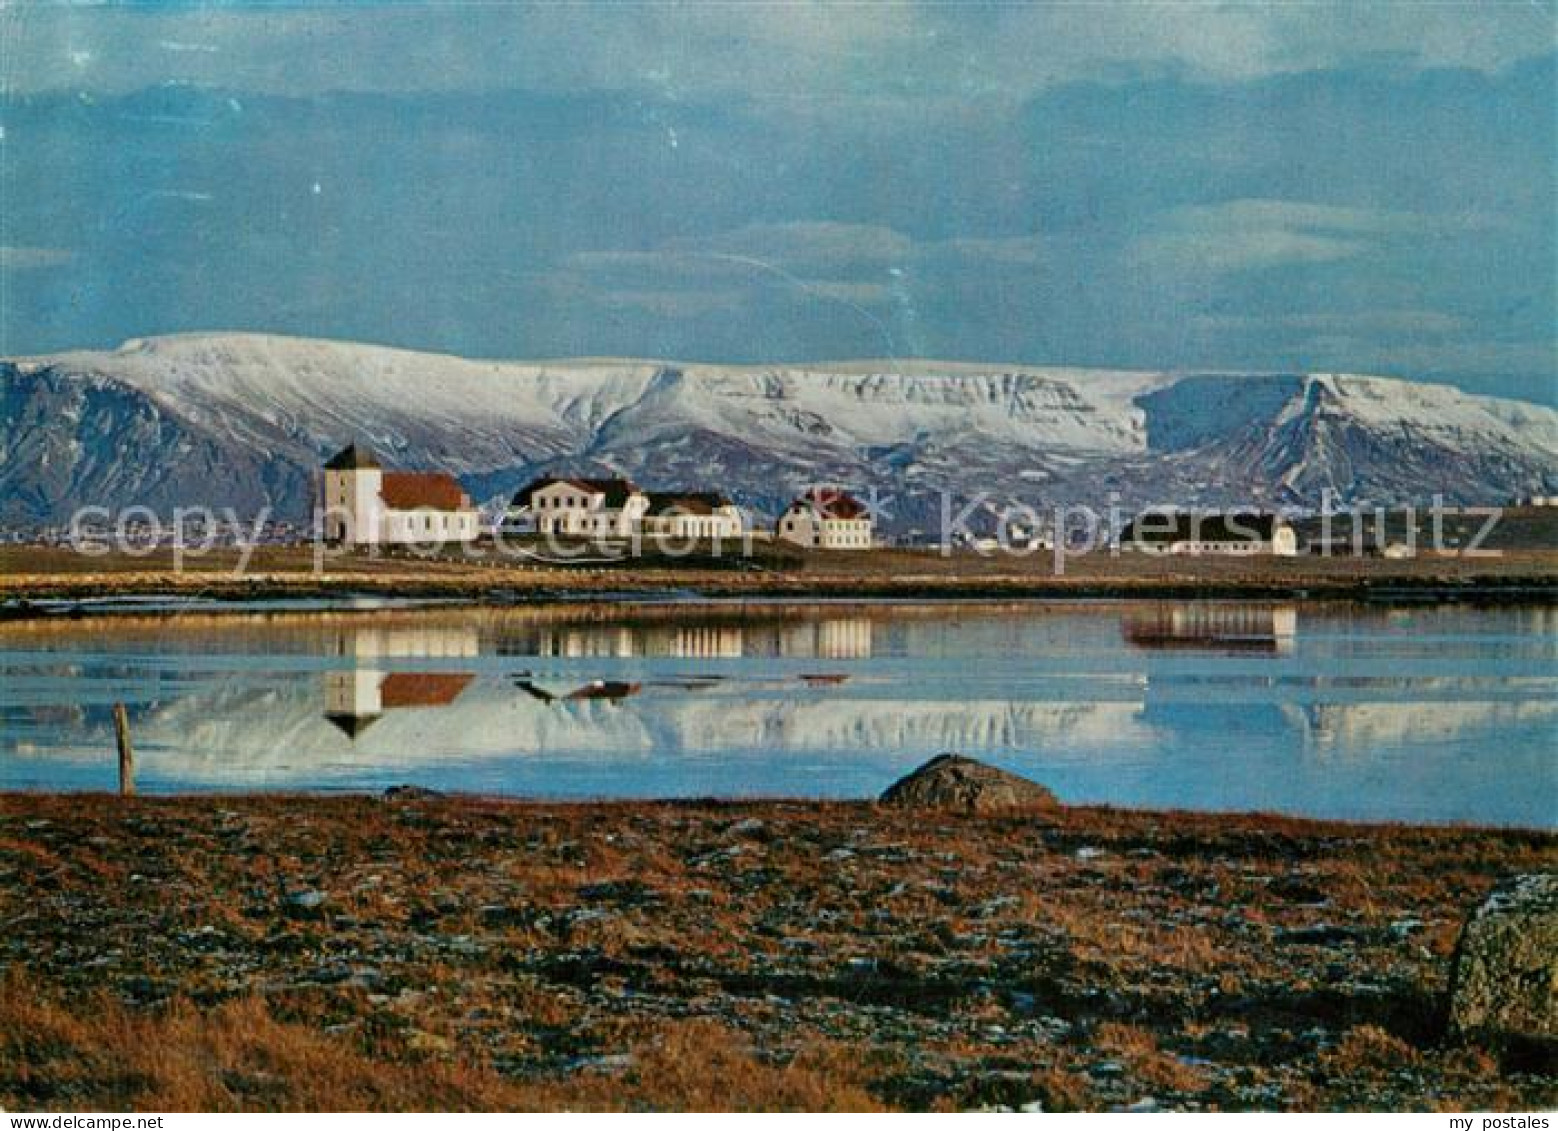 73596117 Gardabaer Bessastadir Residence Of The President Of Iceland Mount Esja  - Island